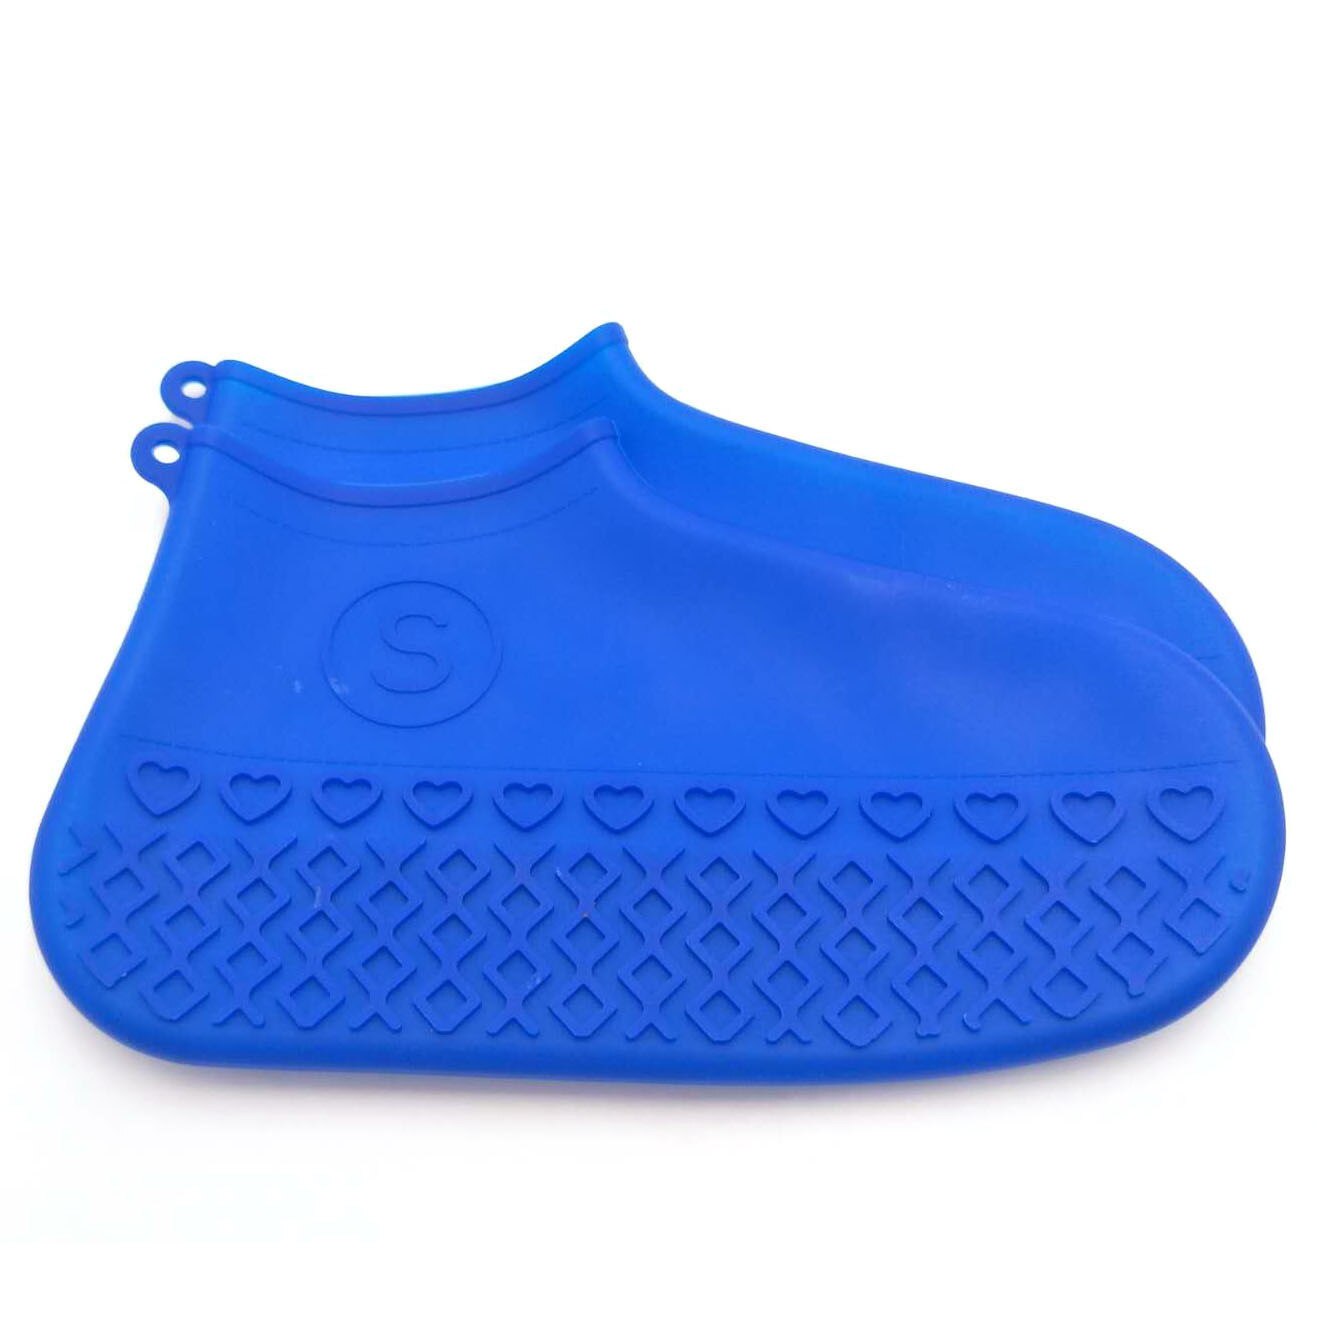 Vandtæt silikone skodæksel udendørs regntæt vandreture skridsikker skoovertræk udendørs camping skridsikker gummiregnsko: Bul